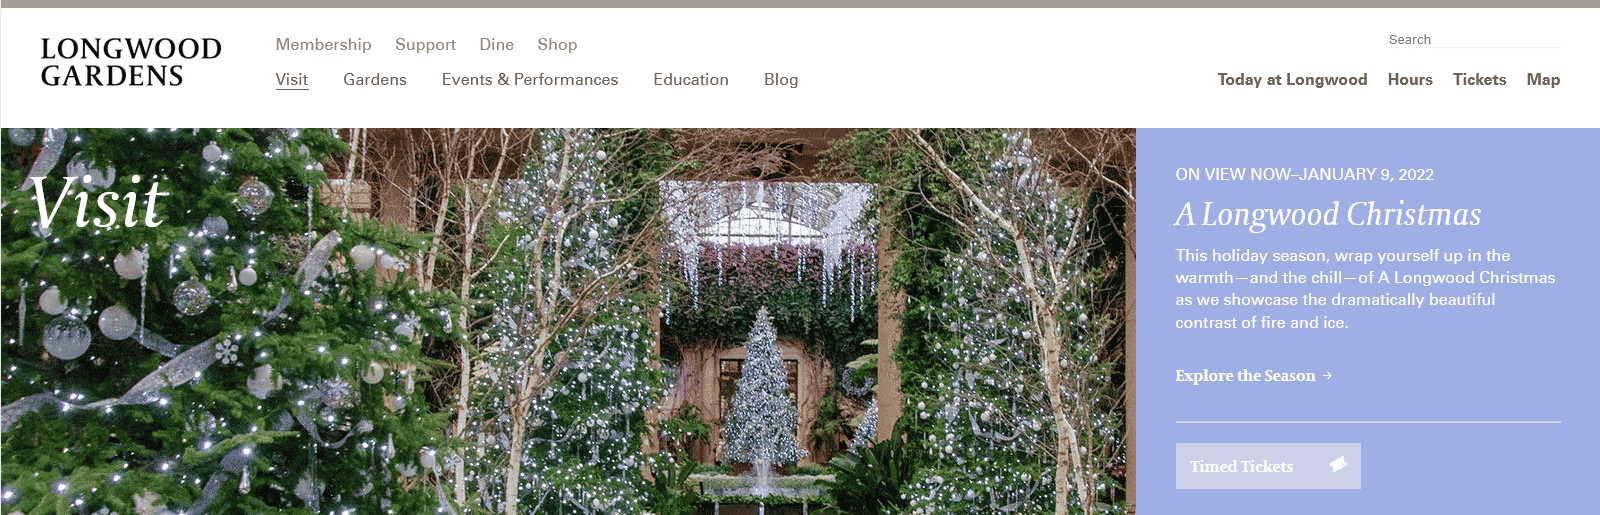 longwood gardens website